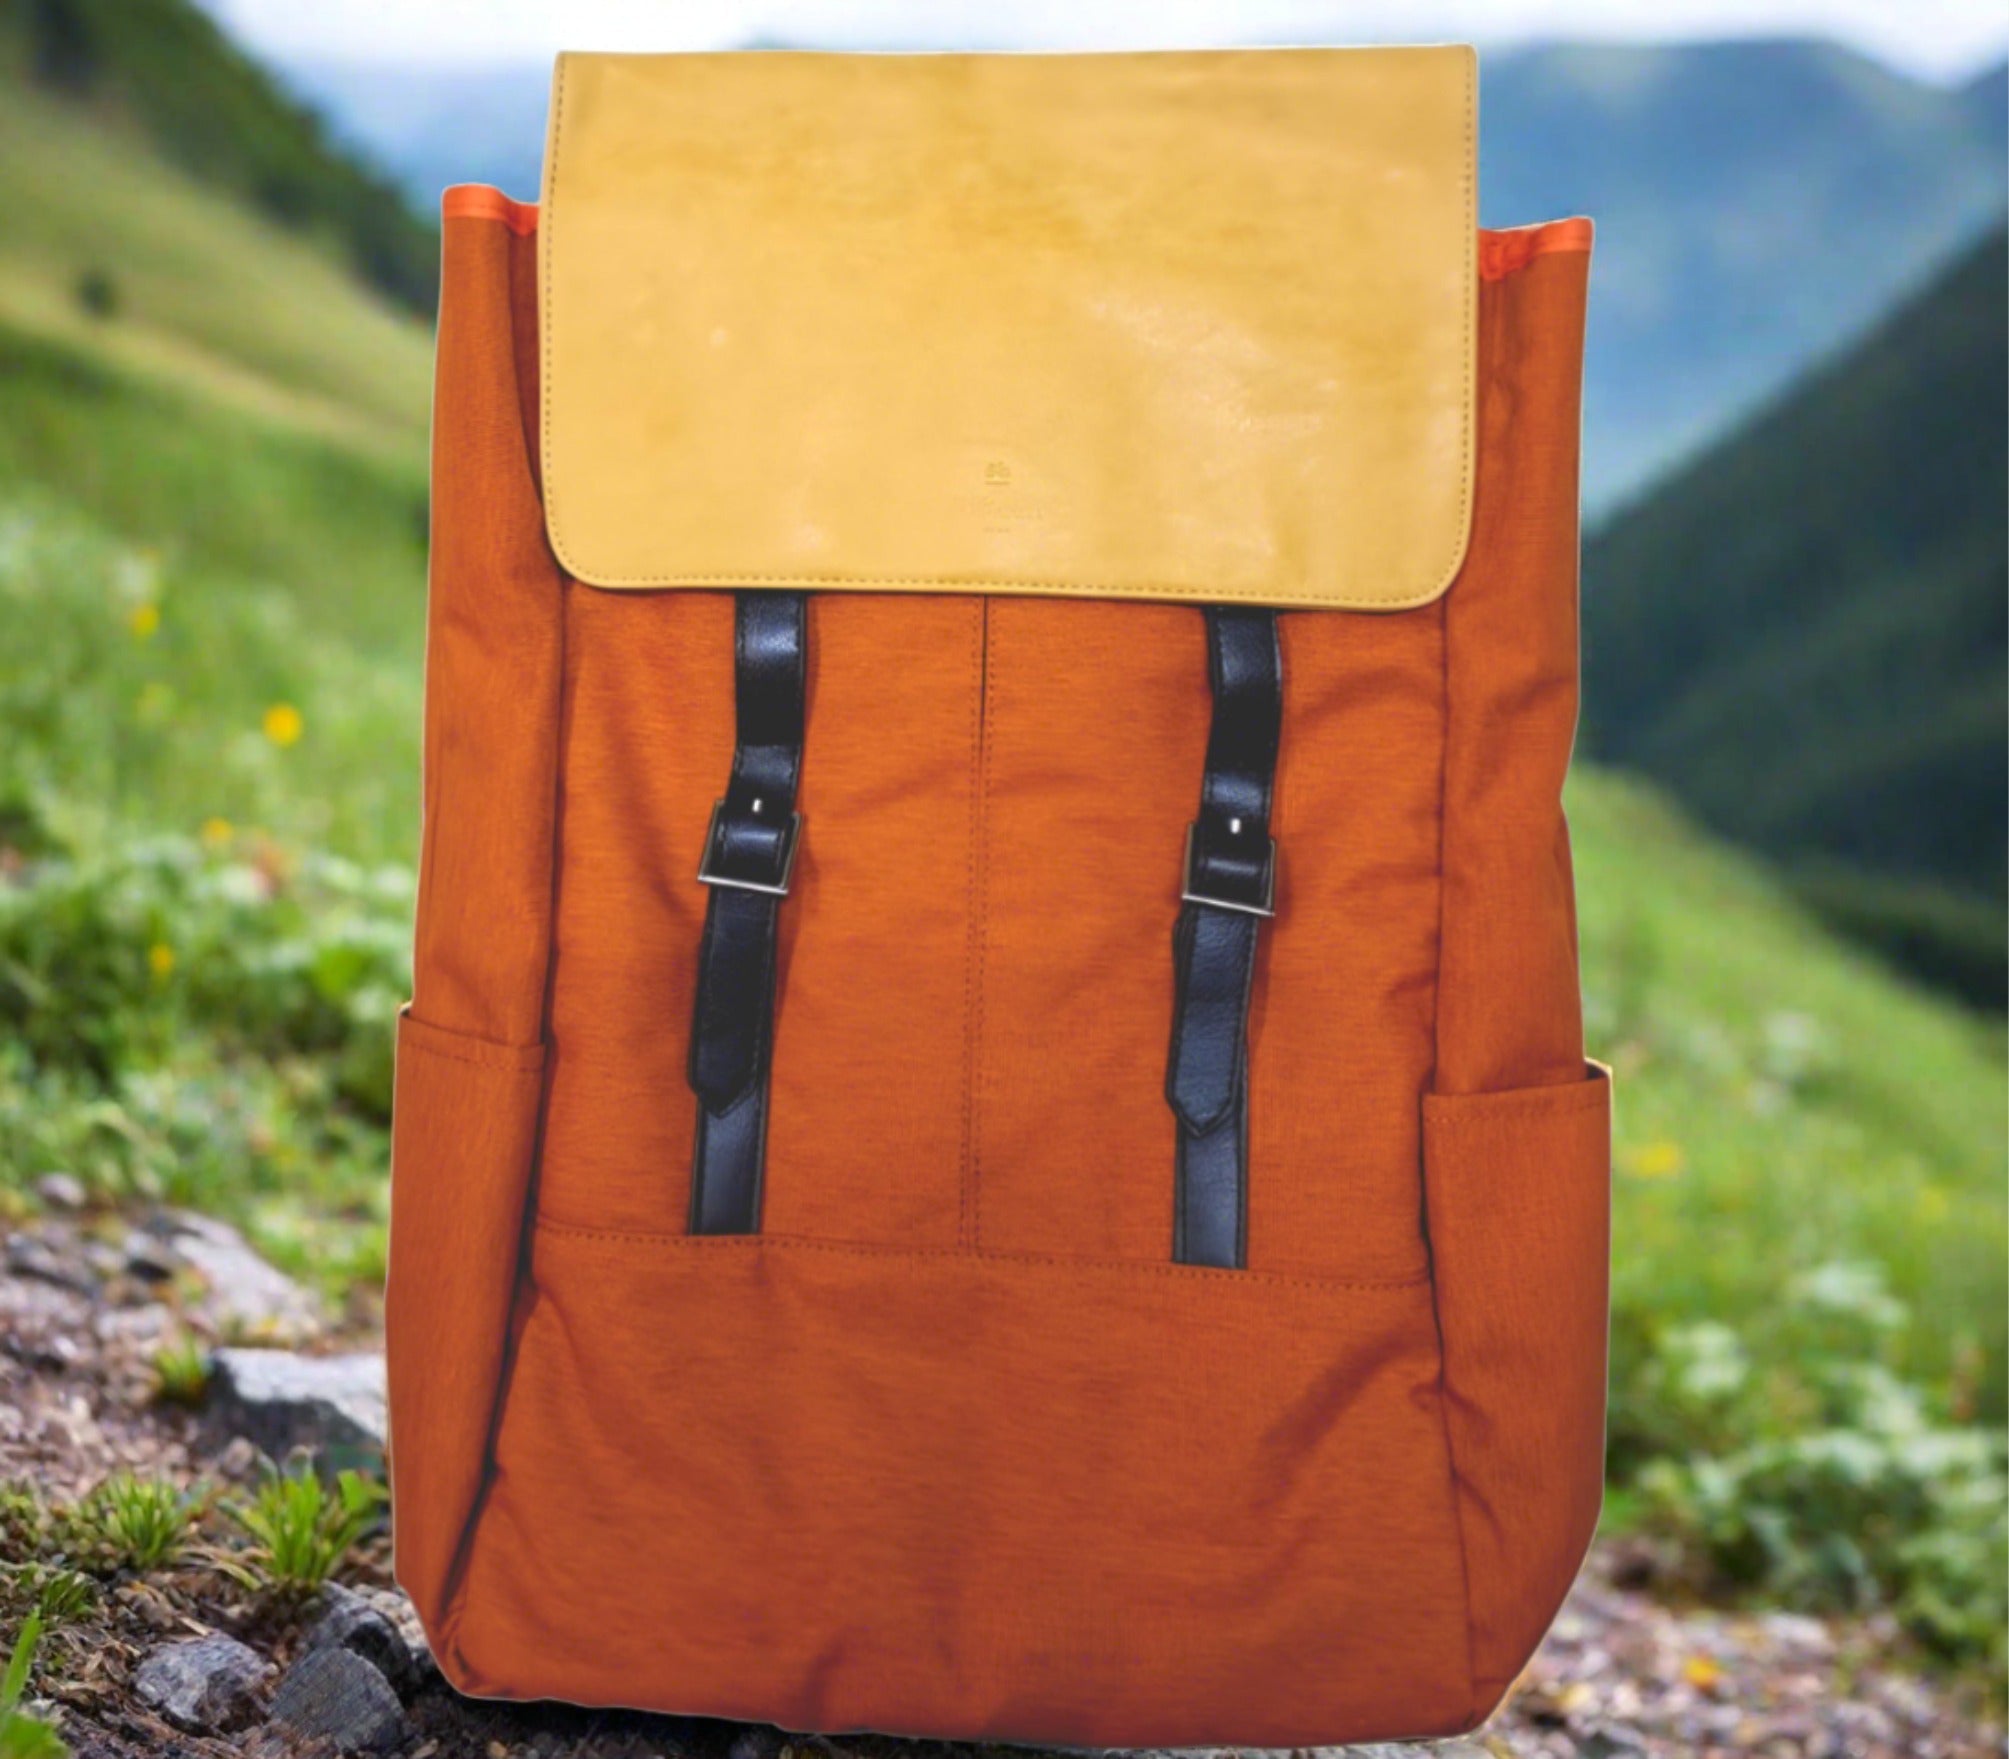 Nifteen – Medic 15” Laptop Bag (Big) - Orange